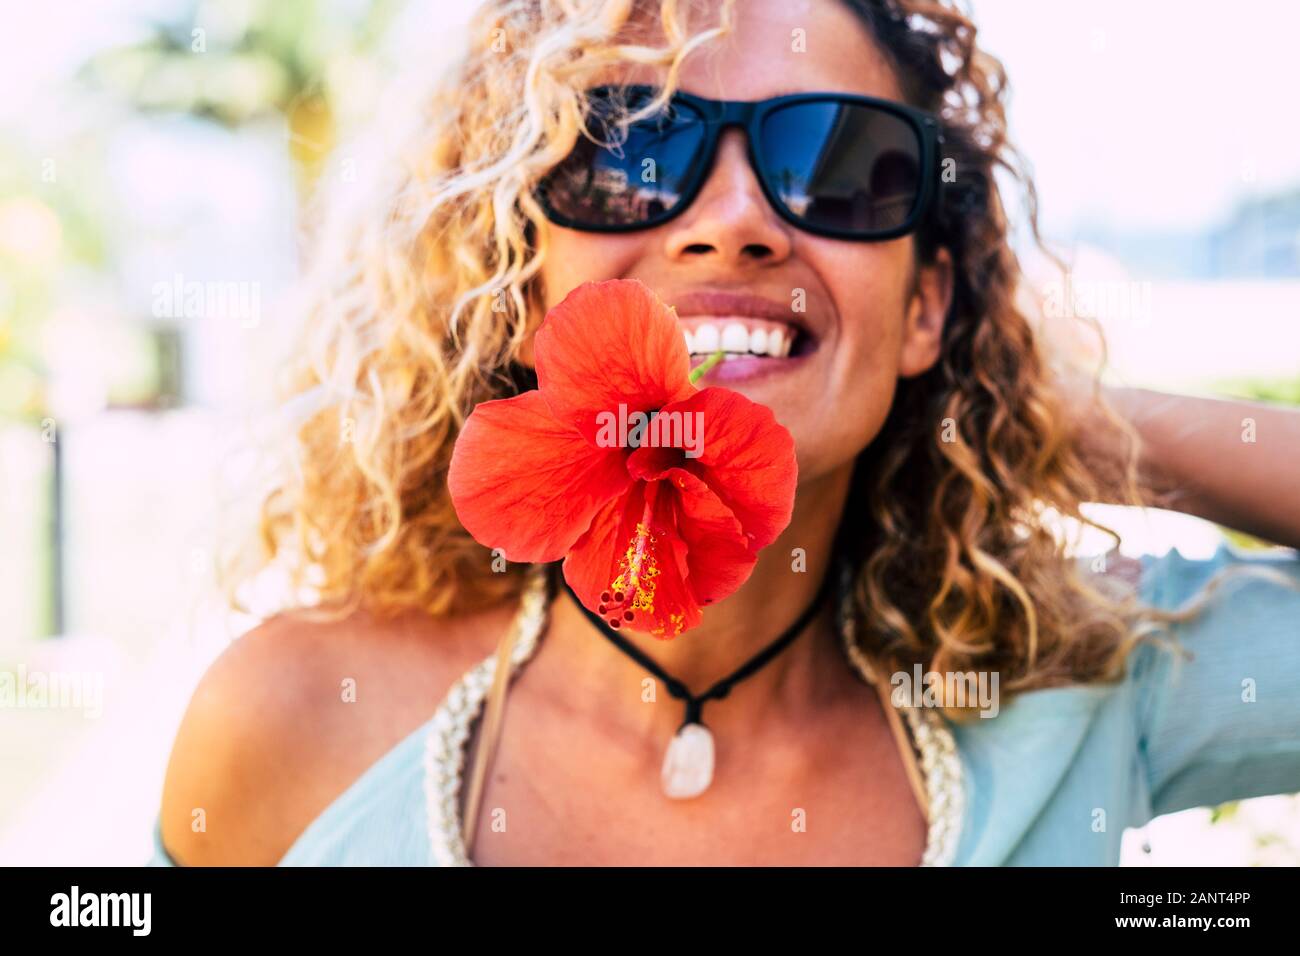 La molla e il concetto di felicità con felice allegro lady prendendo un grande fiore rosso con i denti in bocca sorridente e giocare nella parte anteriore della telecamera - bea Foto Stock